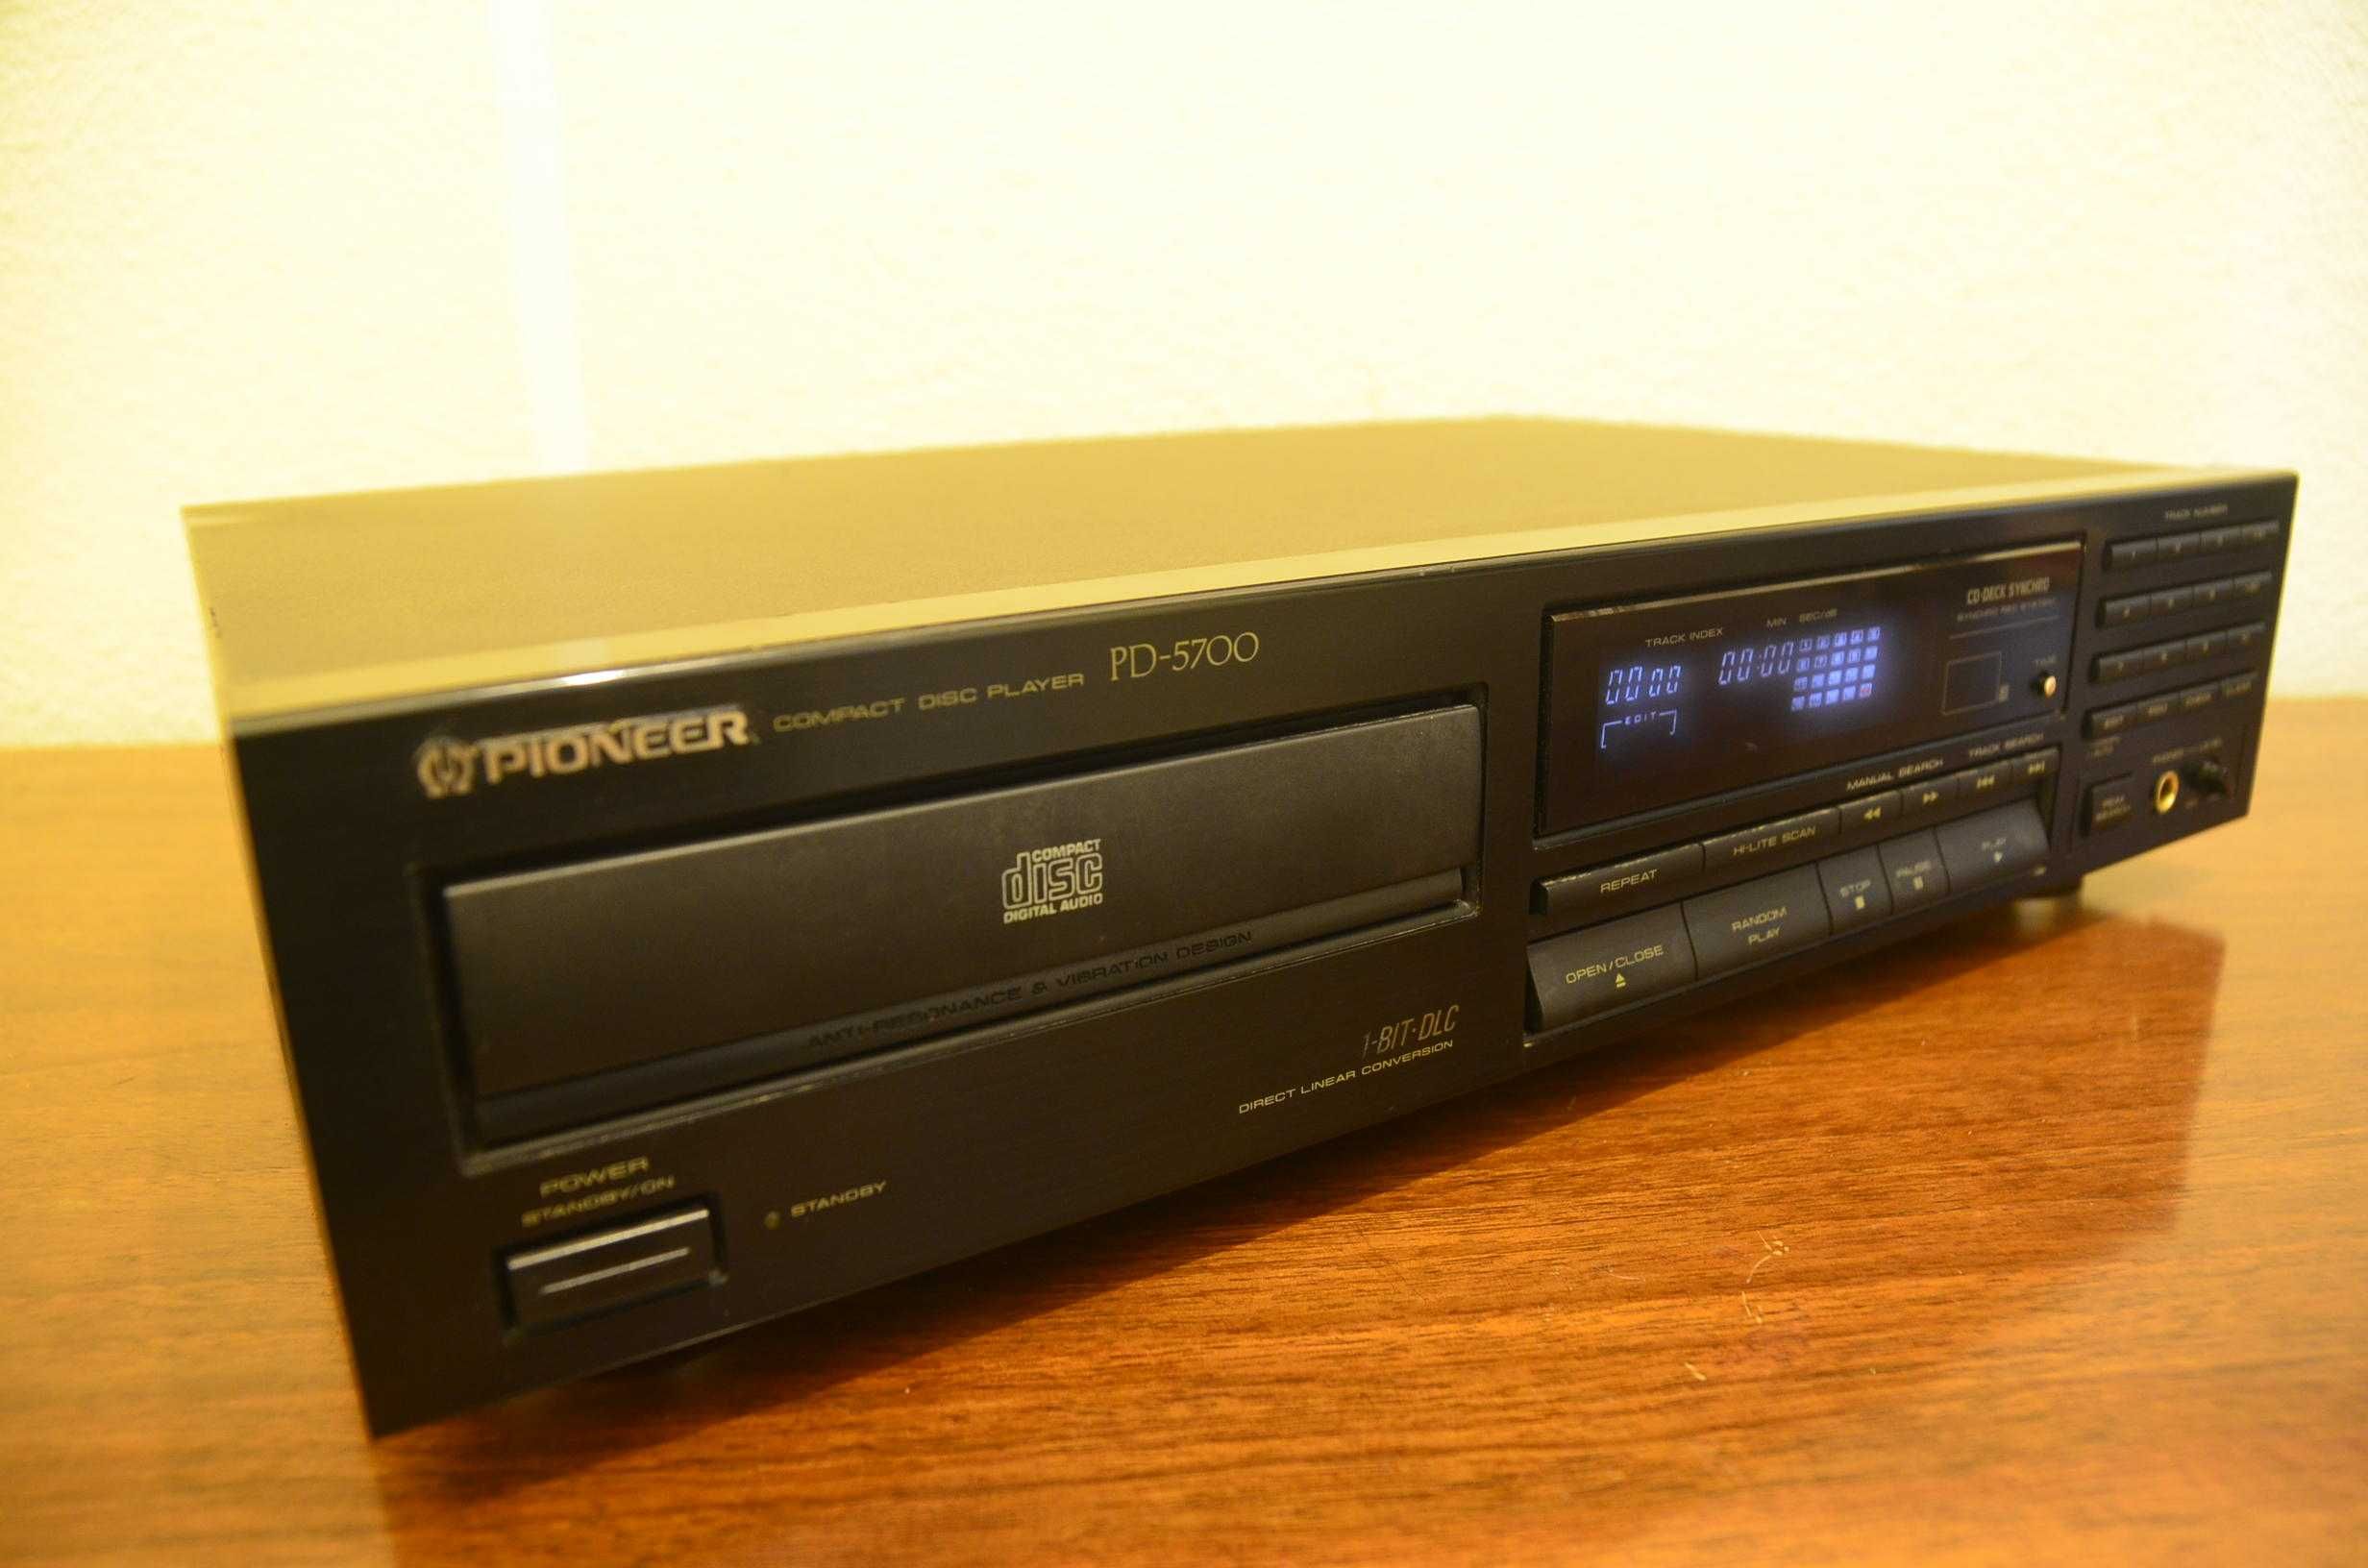 Leitor de CD's Pioneer PD 5700